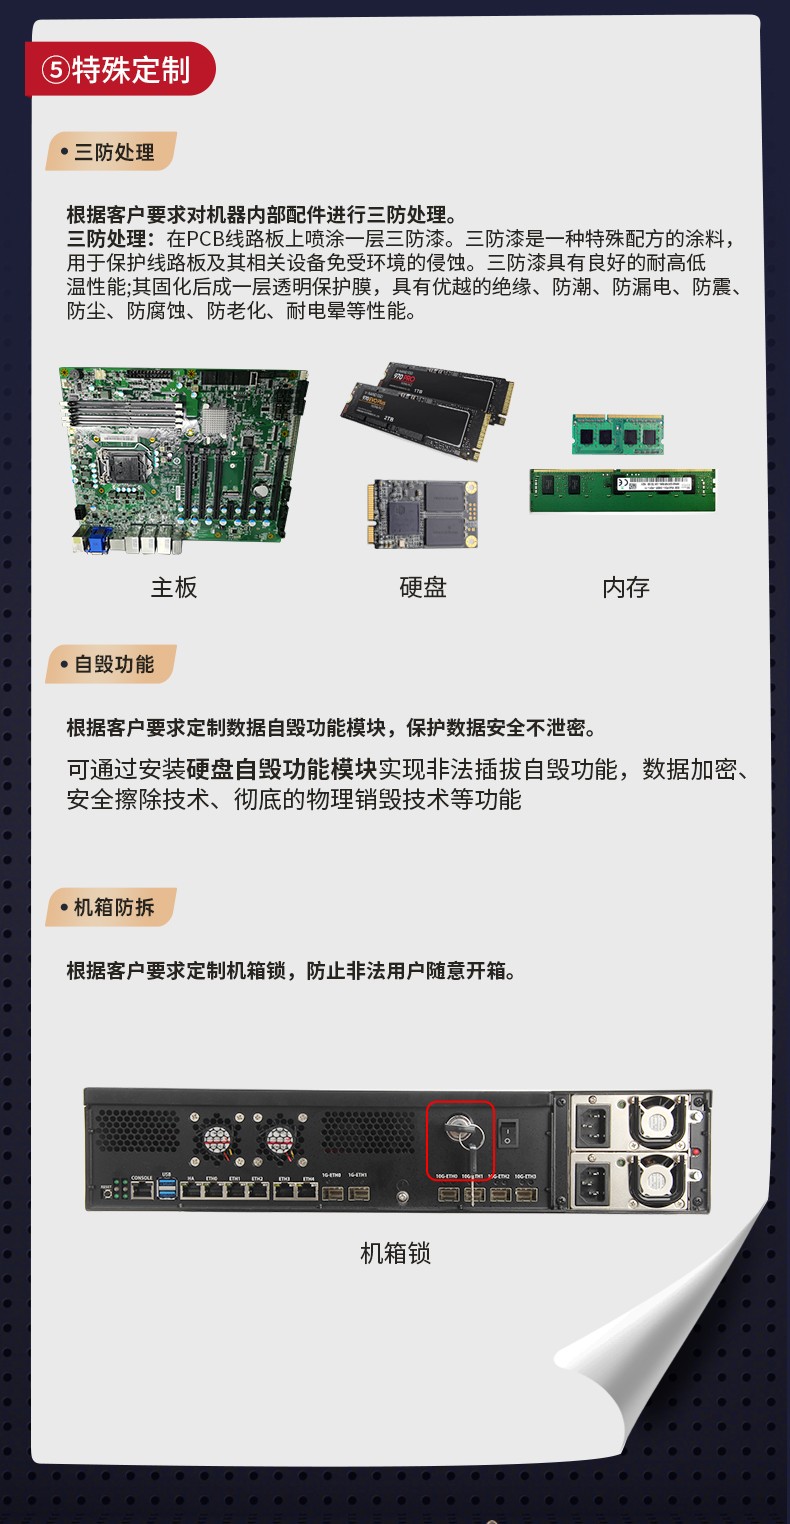 东田工控,桌面式工控机,DT-JR-JH81MC机箱.jpg